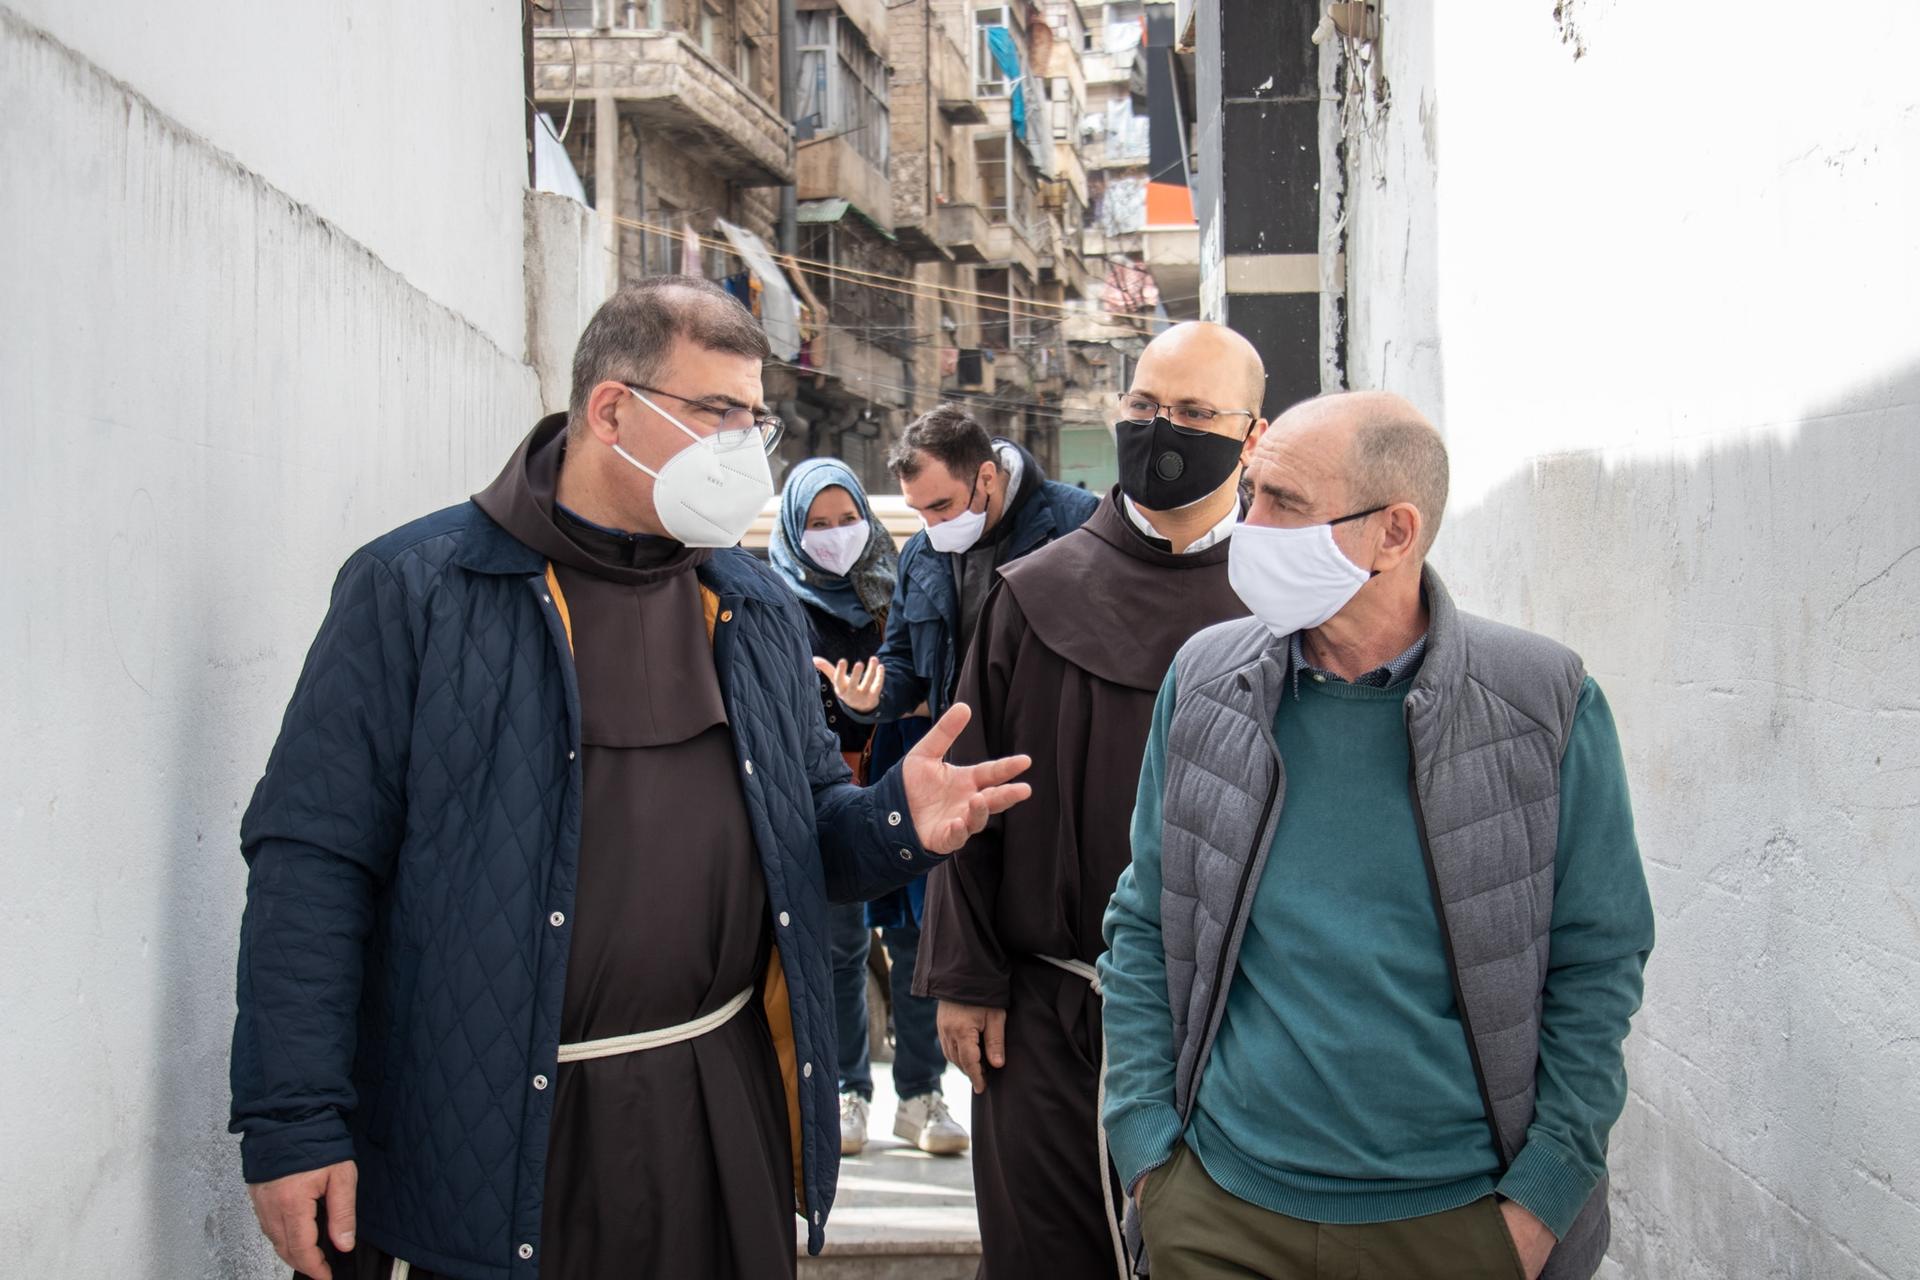 Chroniques d’un voyage en Syrie pendant la pandémie